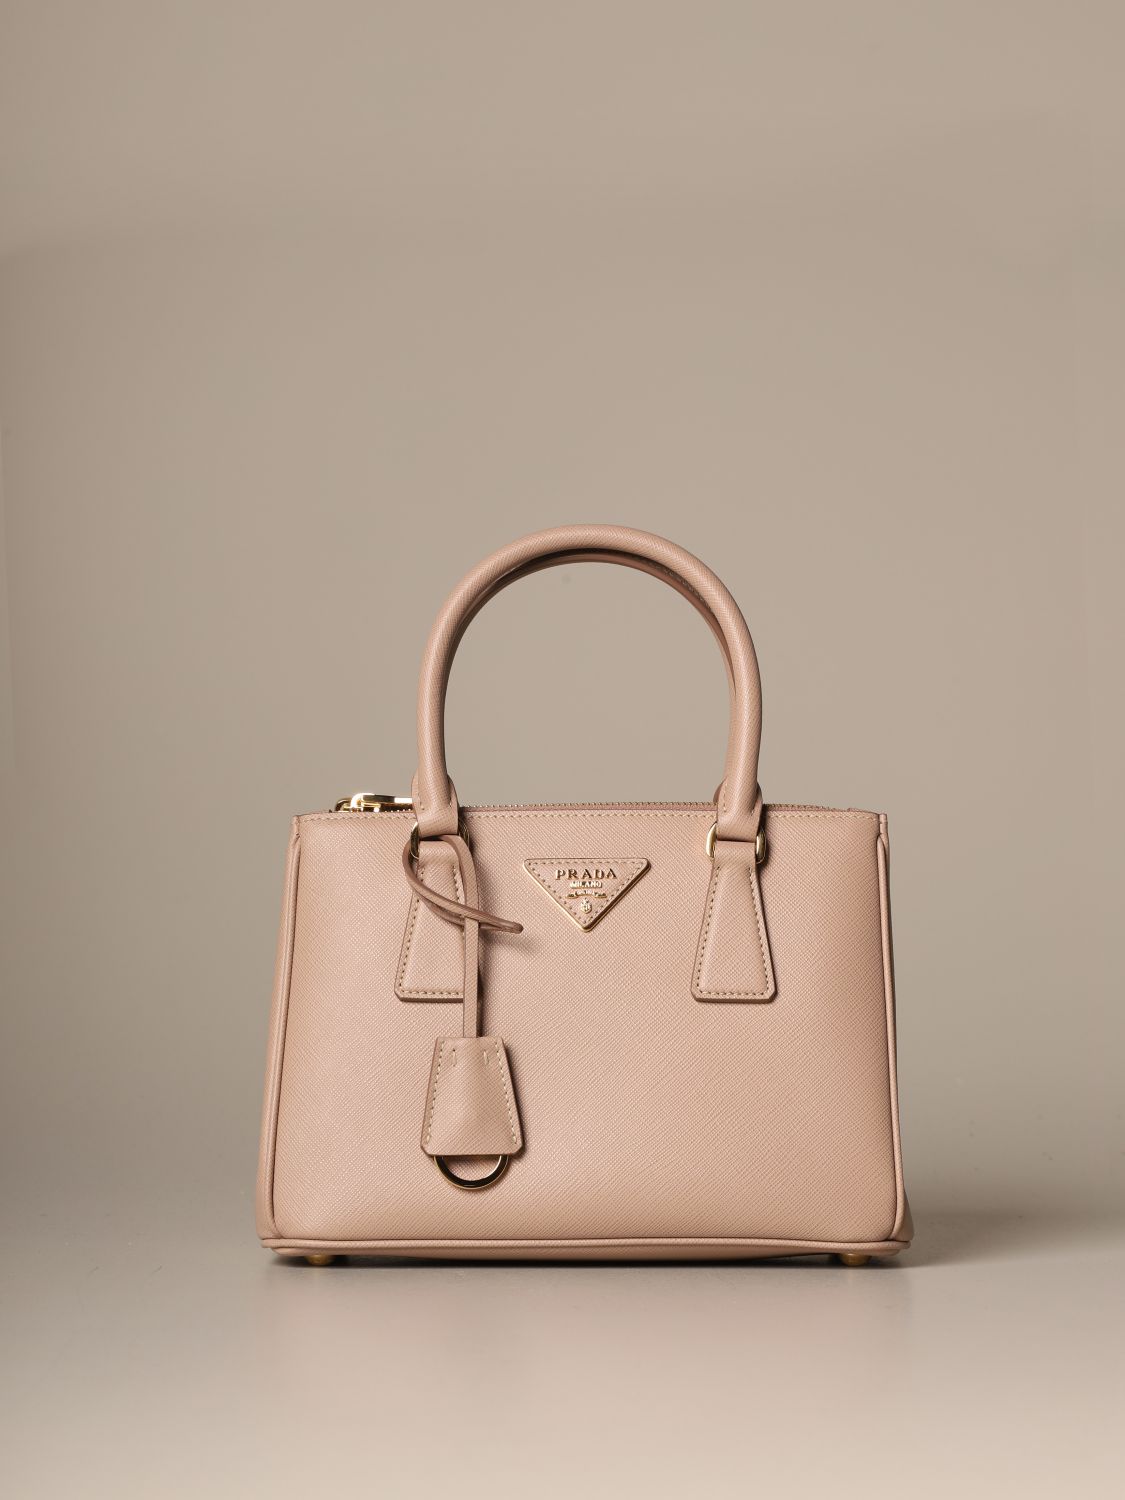 Prada Galleria mini pink bag